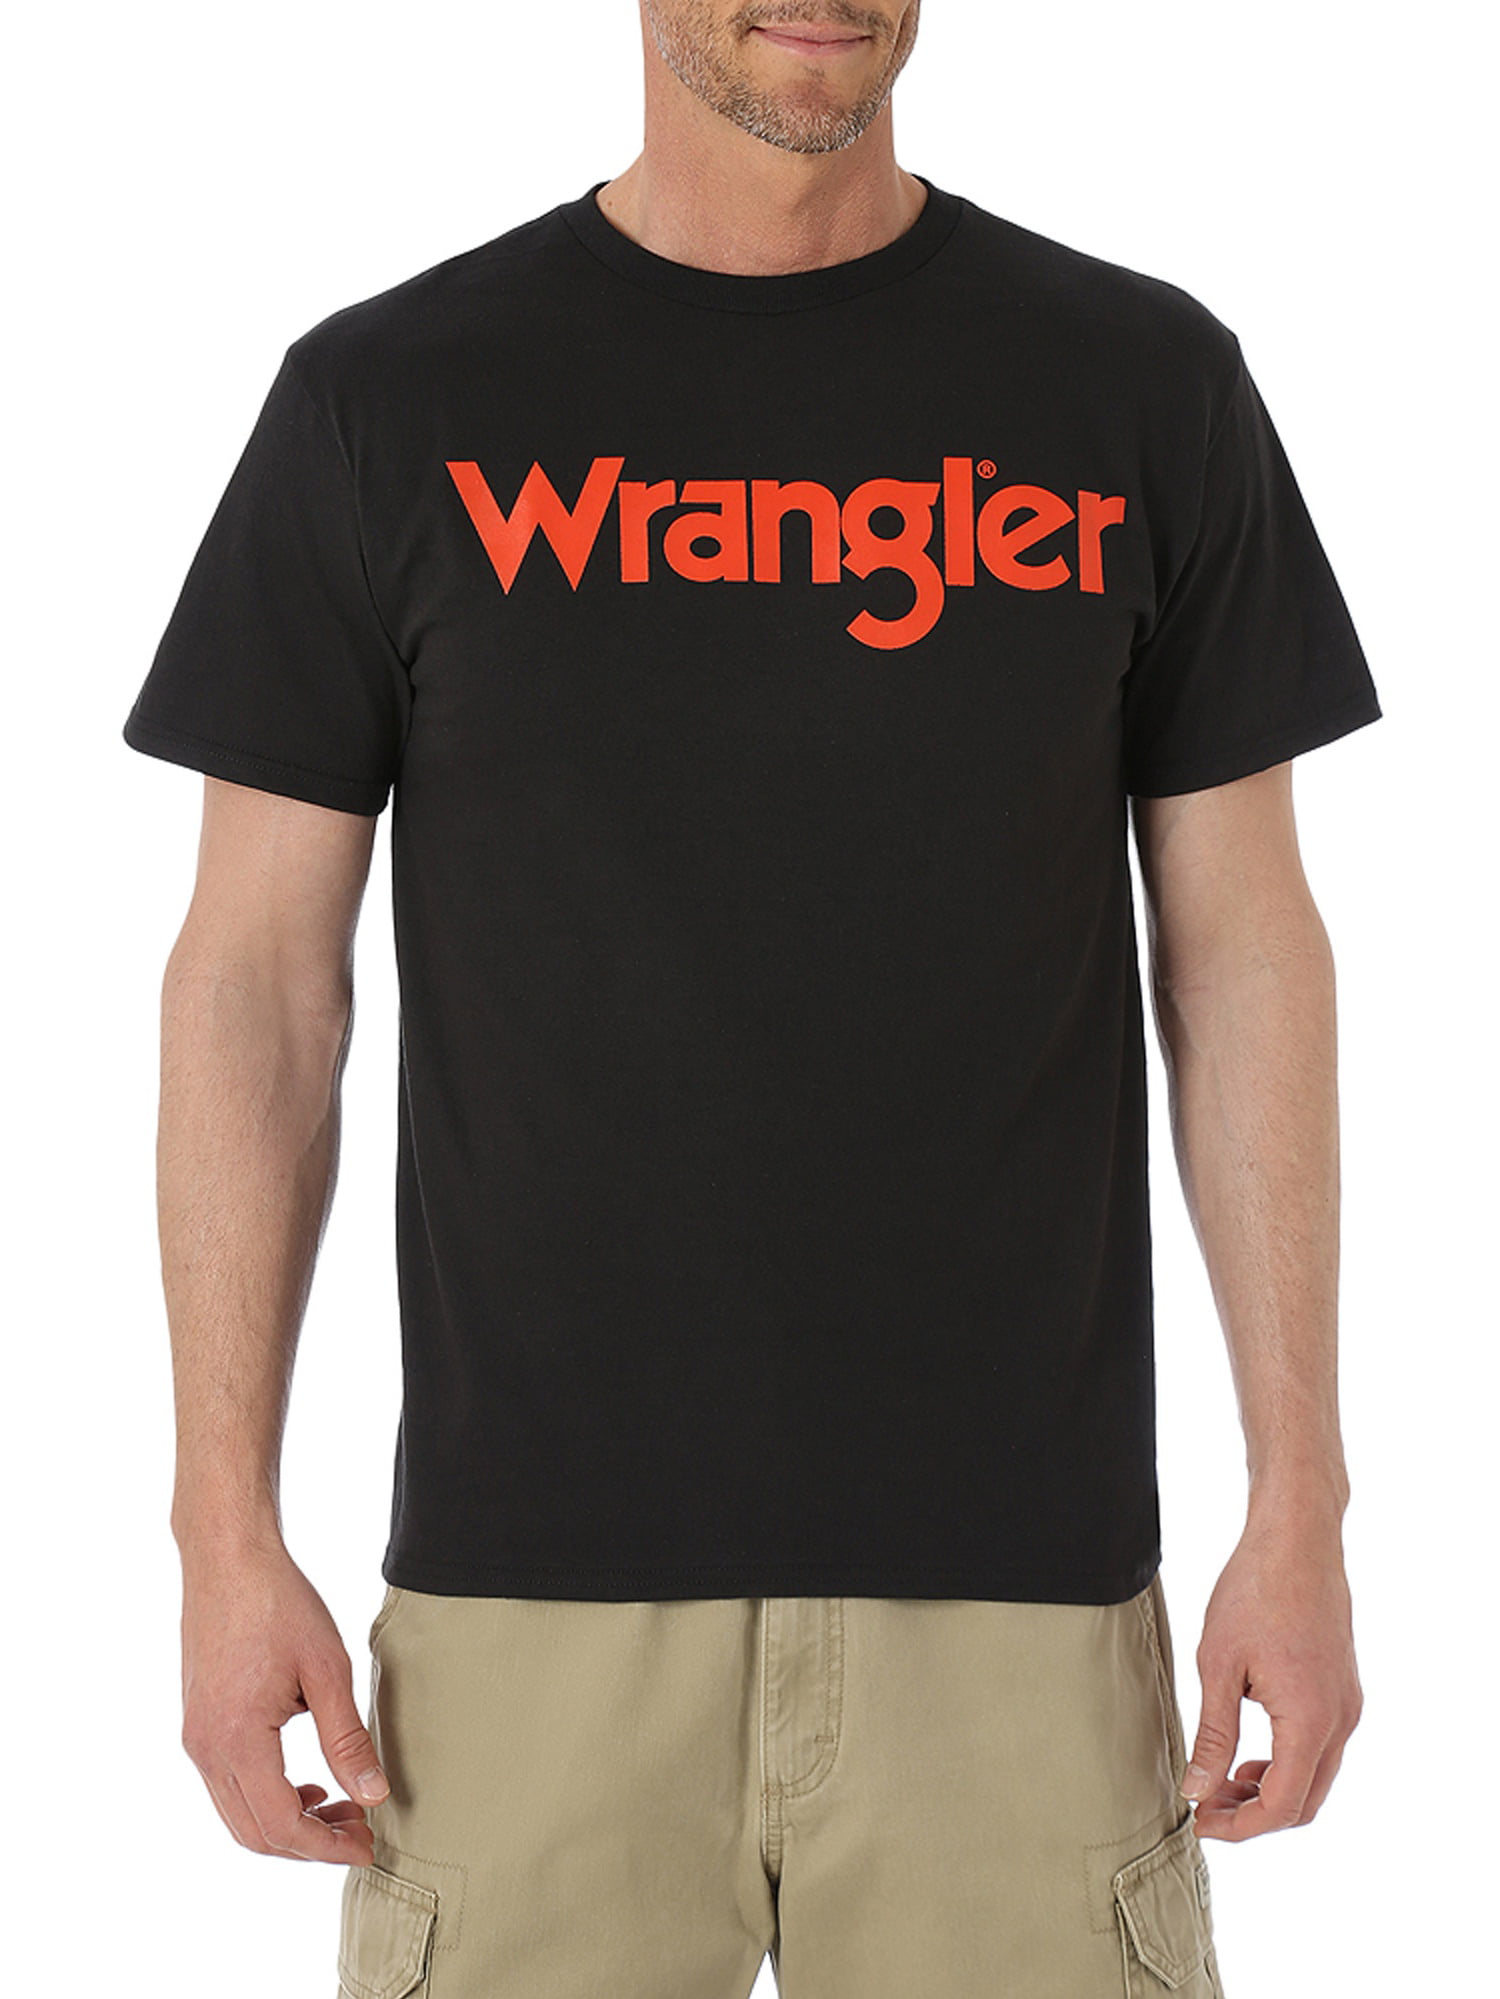 Buy mens wrangler t shirt - OFF 69%